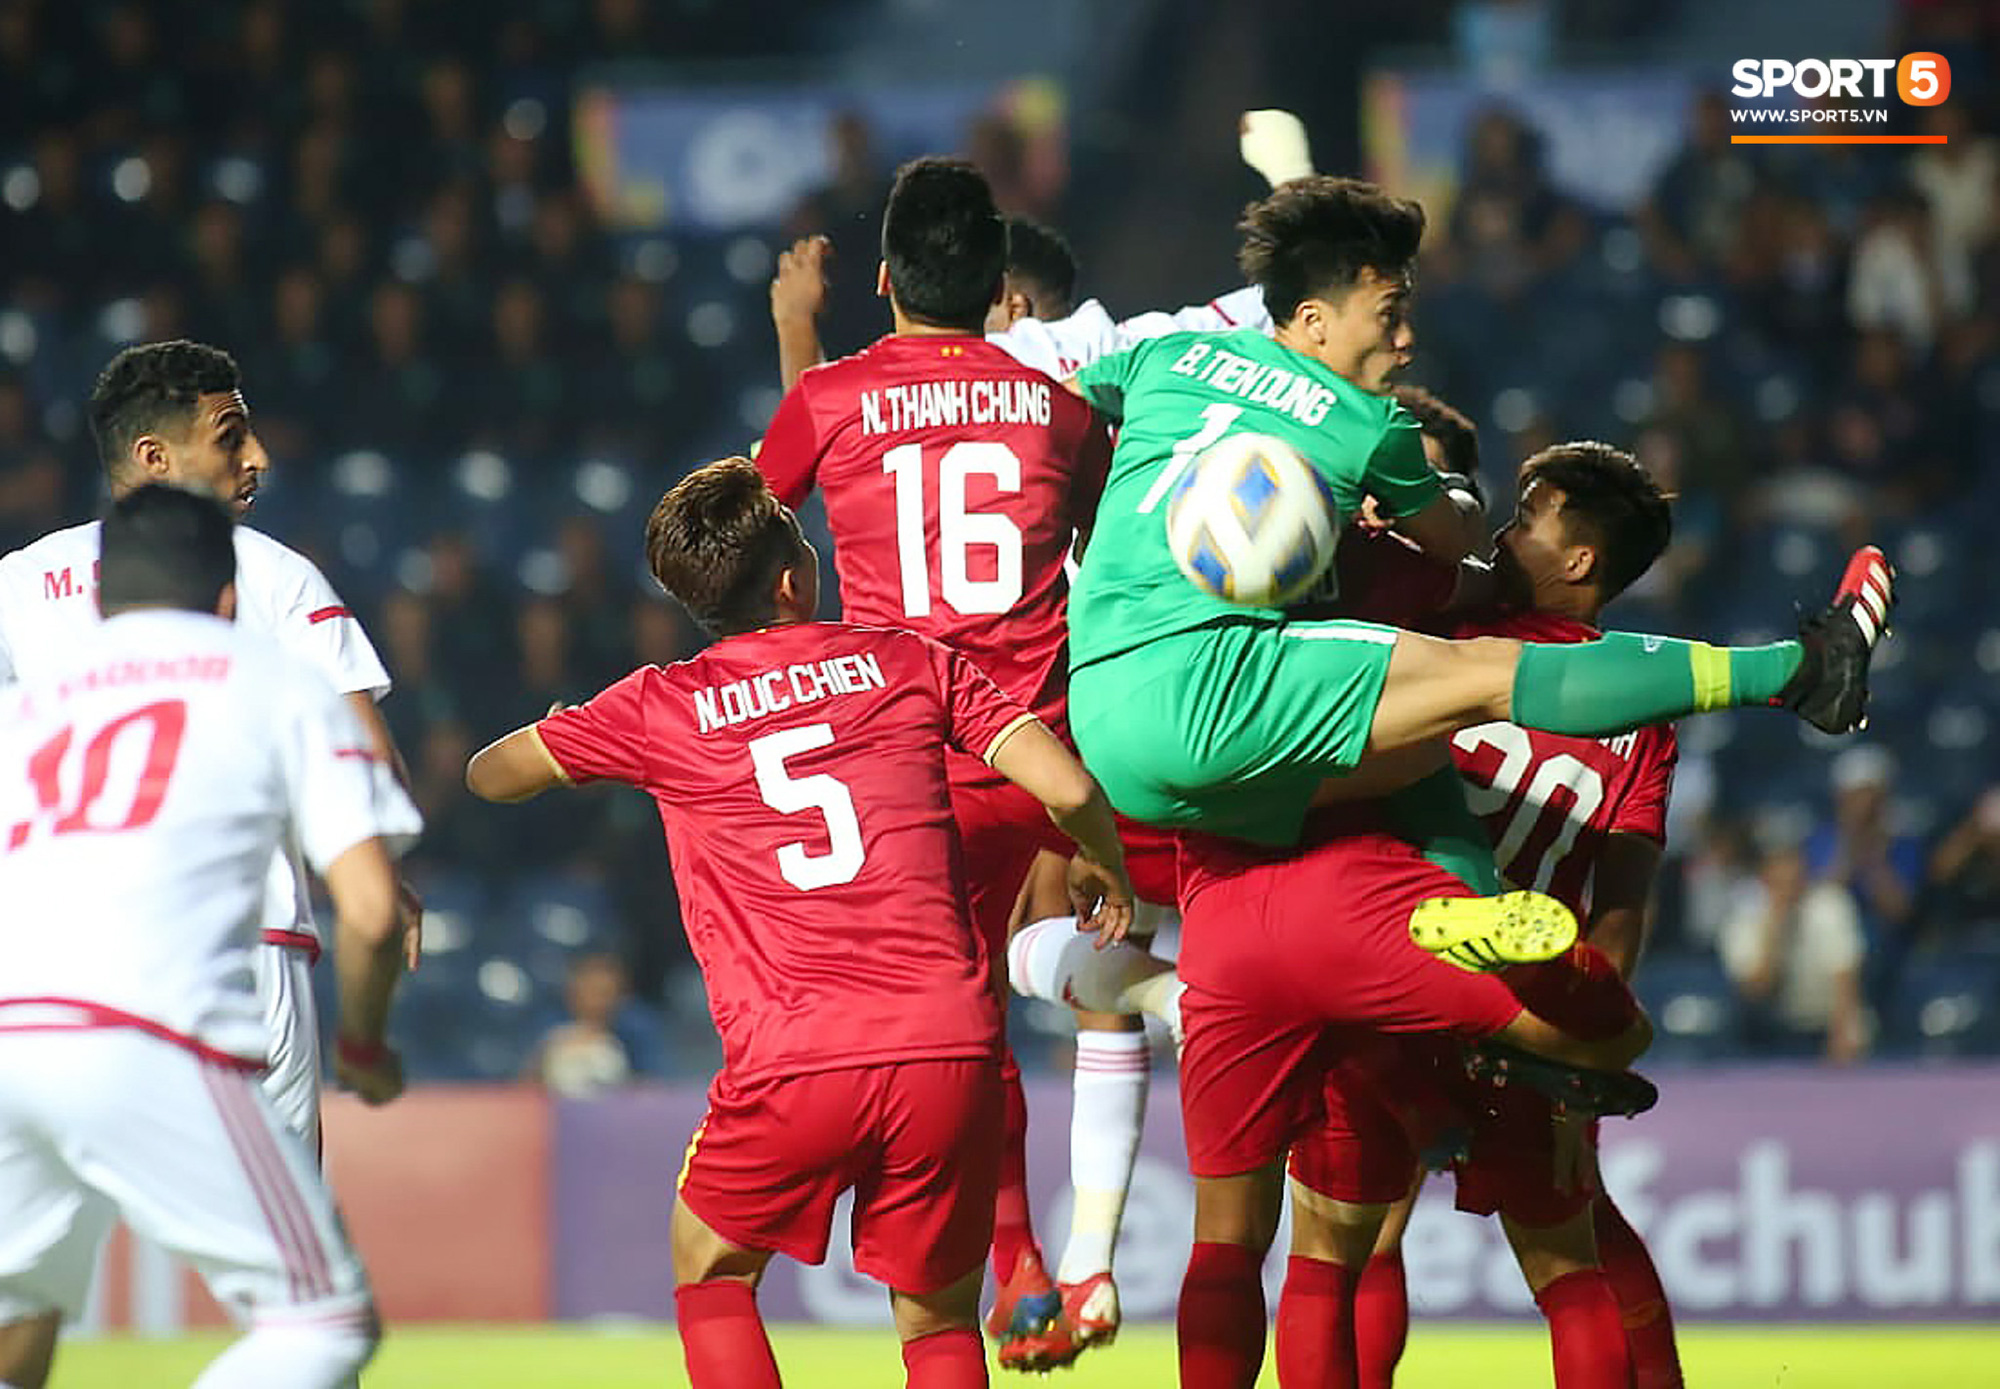 Bùi Tiến Dũng đạp “xích lô”, cười thả ga cùng đàn em sau màn trở lại ấn tượng ở U23 Việt Nam - Ảnh 9.